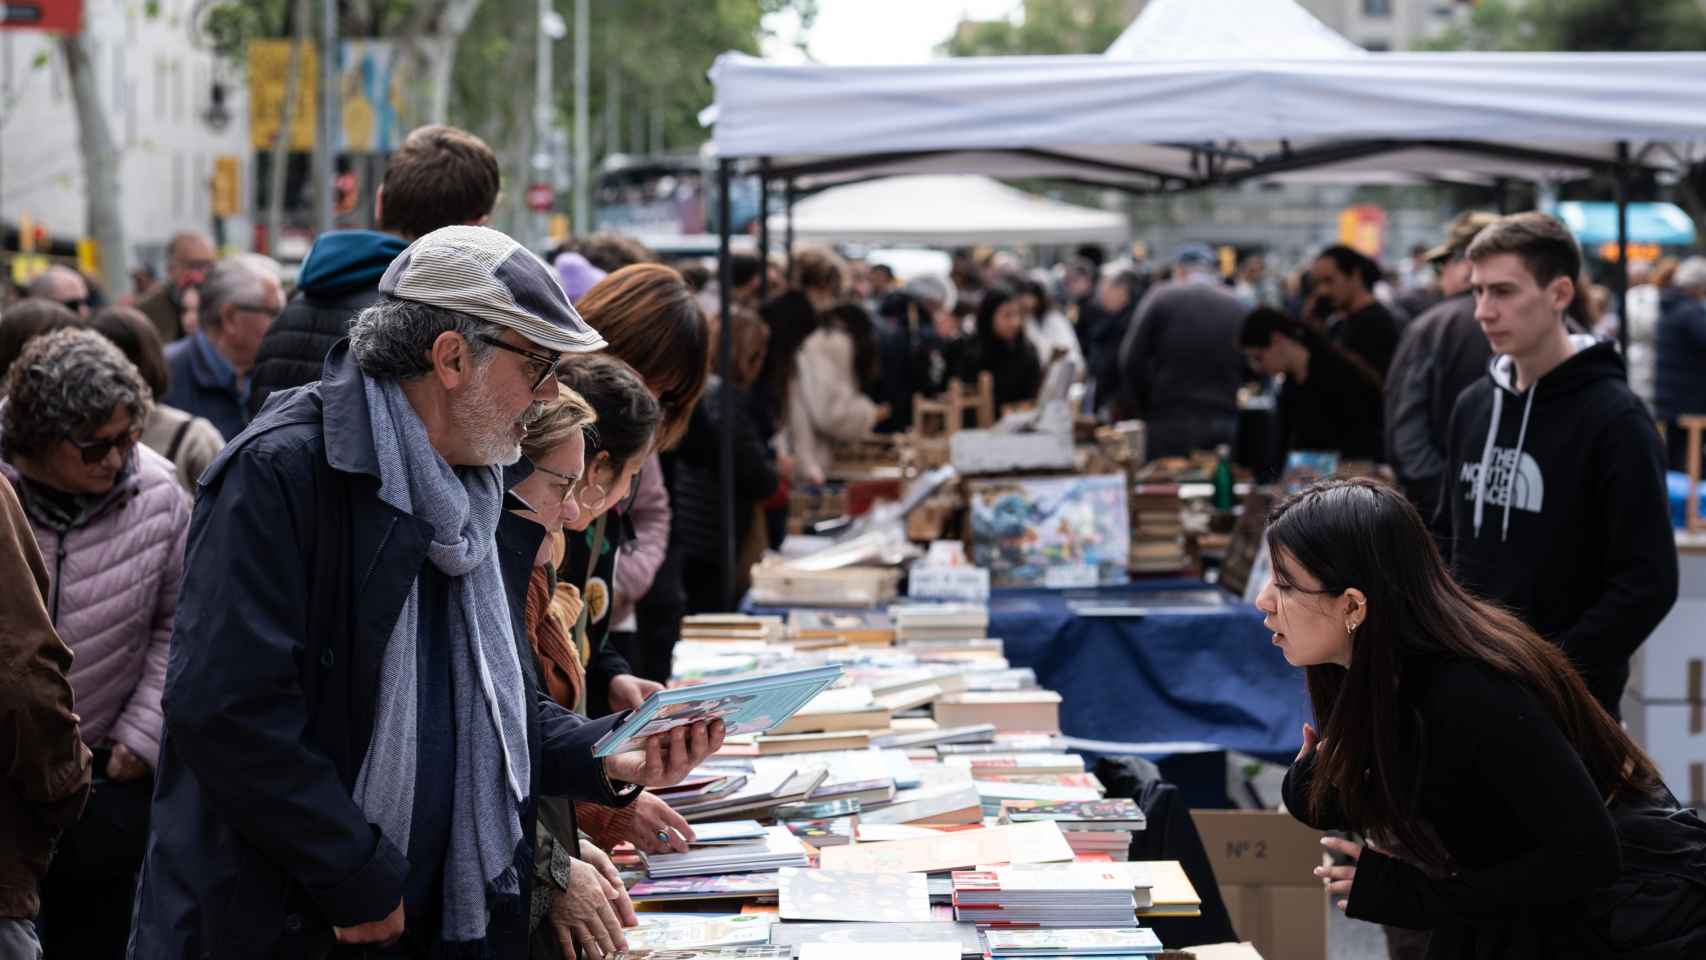 Parada de libros en la celebración de Sant Jordi en Barcelona